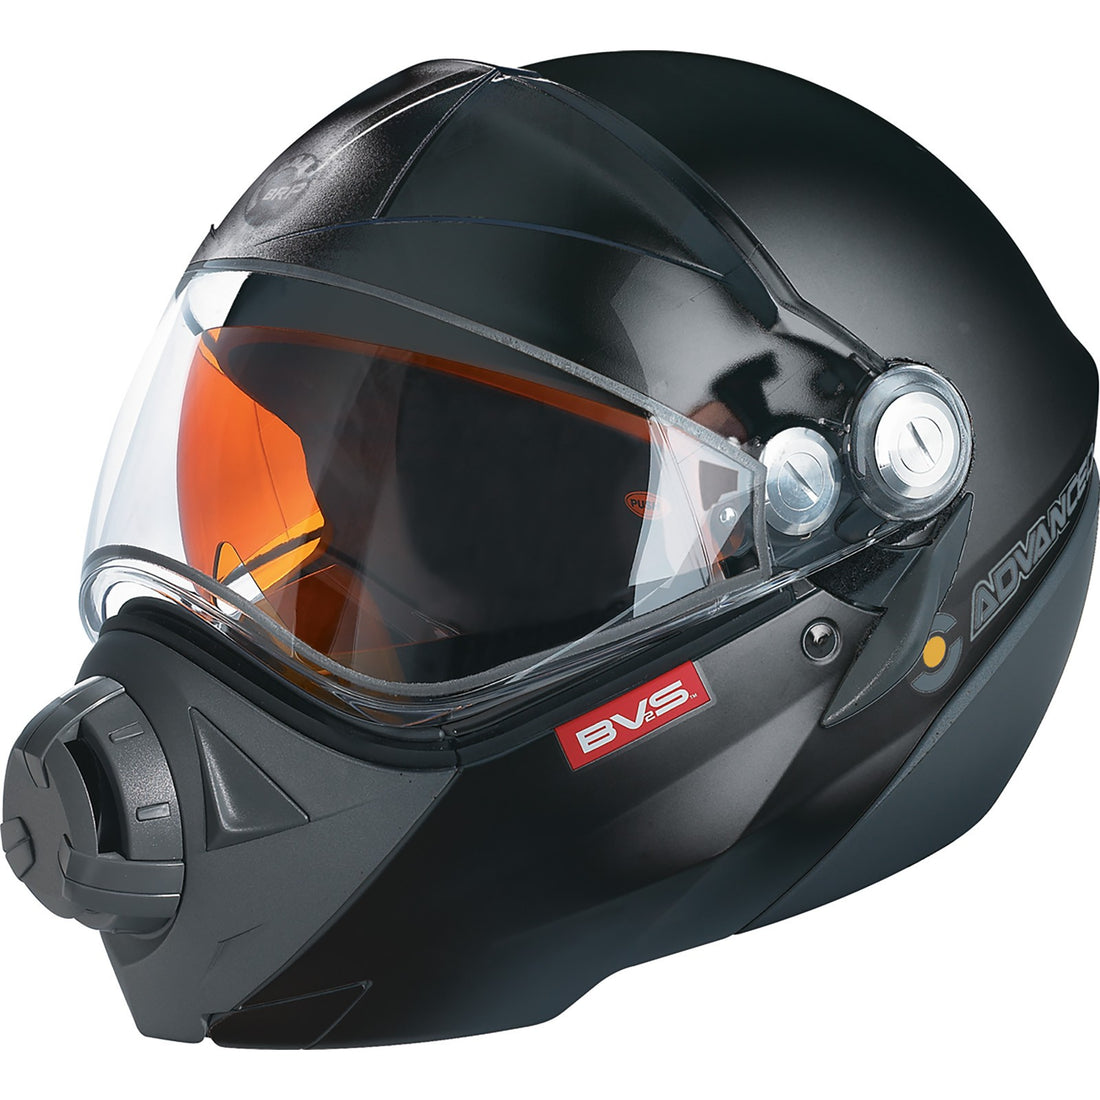 Ski-Doo BV2S Helmet